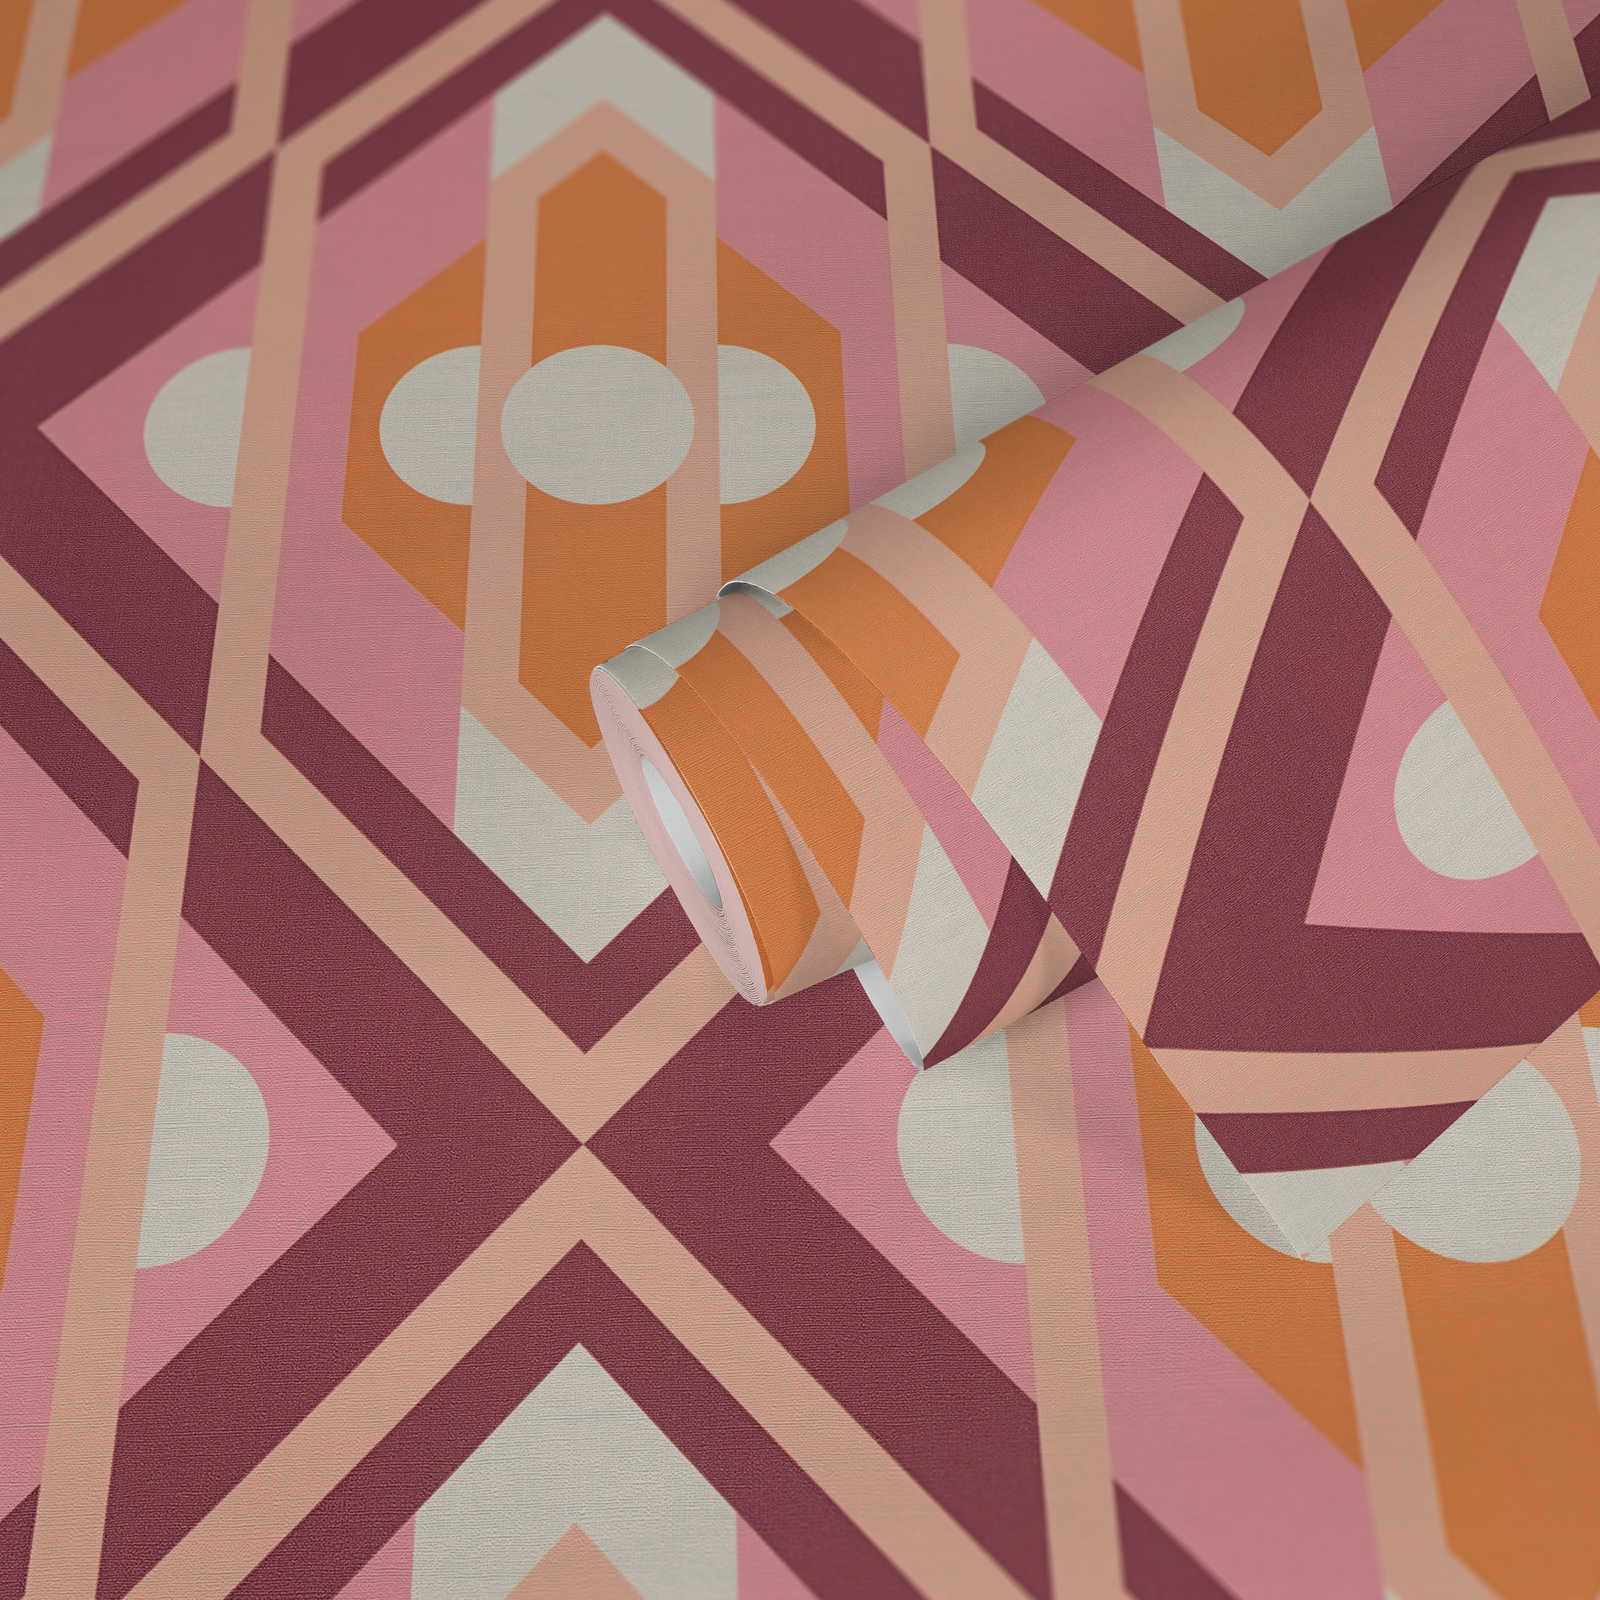             papier peint en papier intissé avec ornements géométriques de style rétro - orange, rose, blanc
        